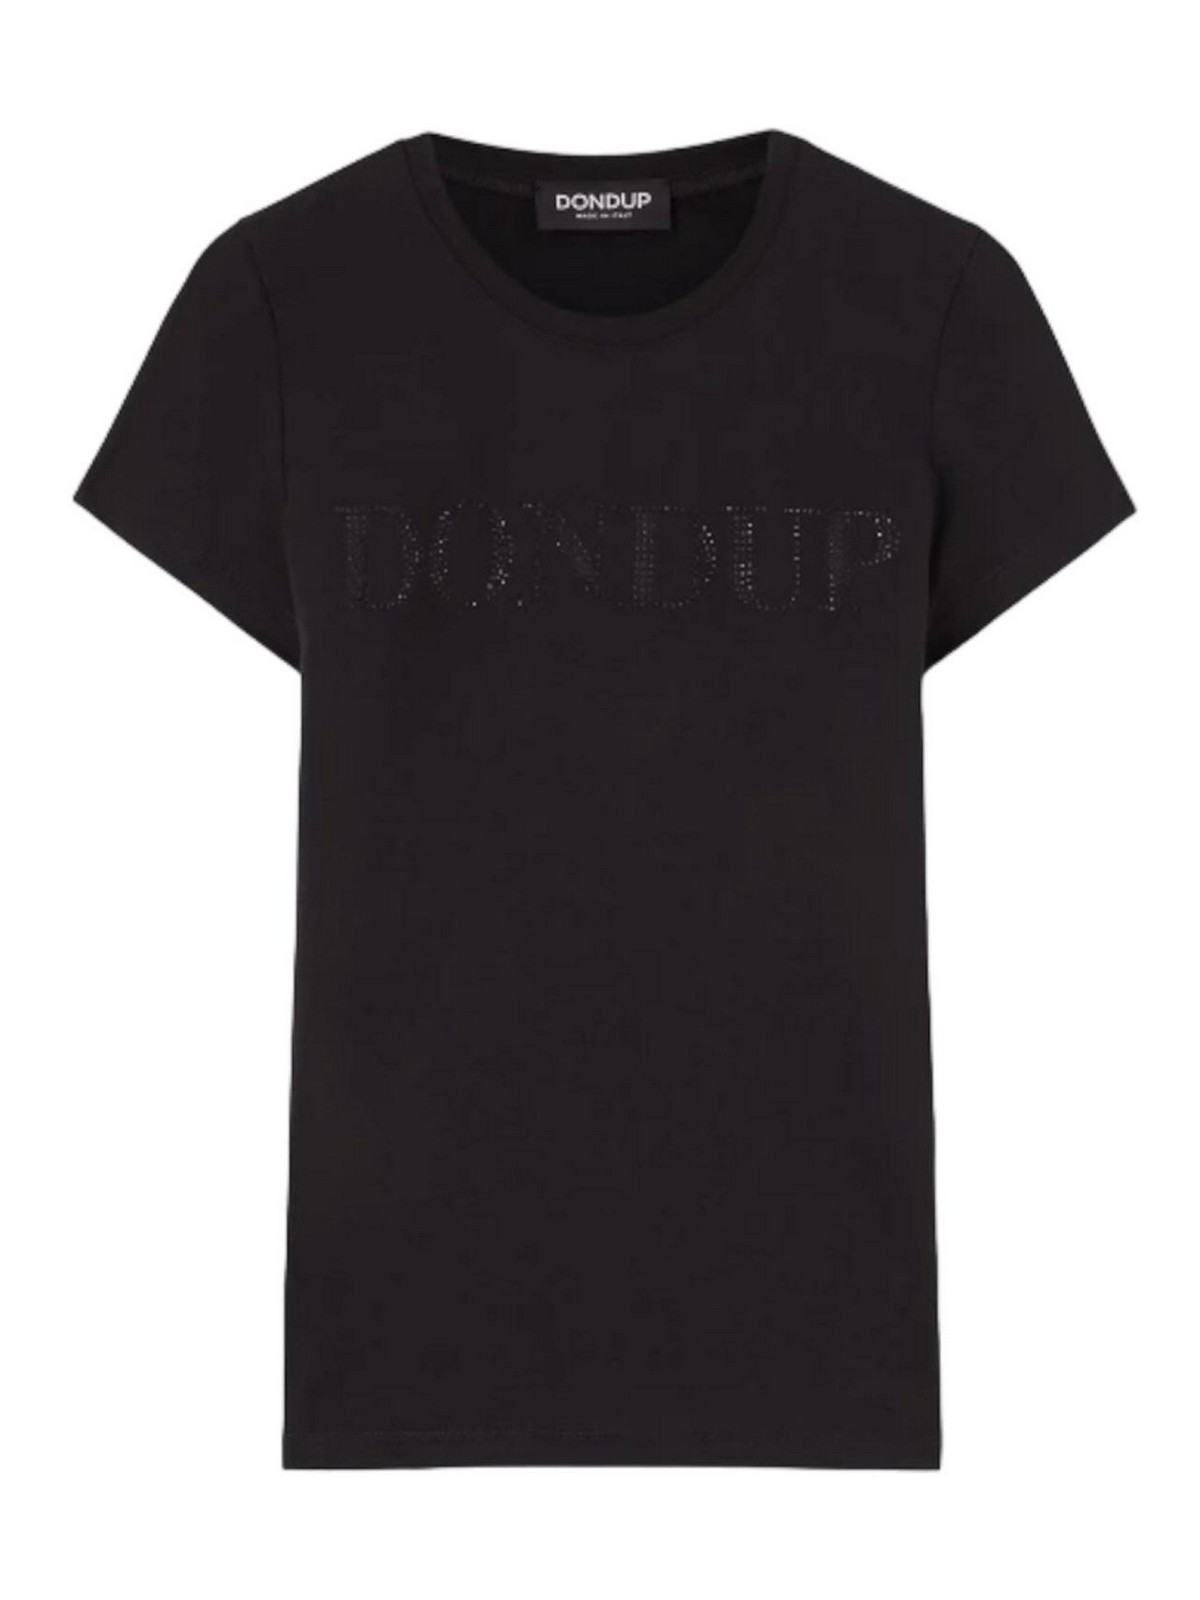 Colección de Camisetas Negras, Dondup, Camisetas